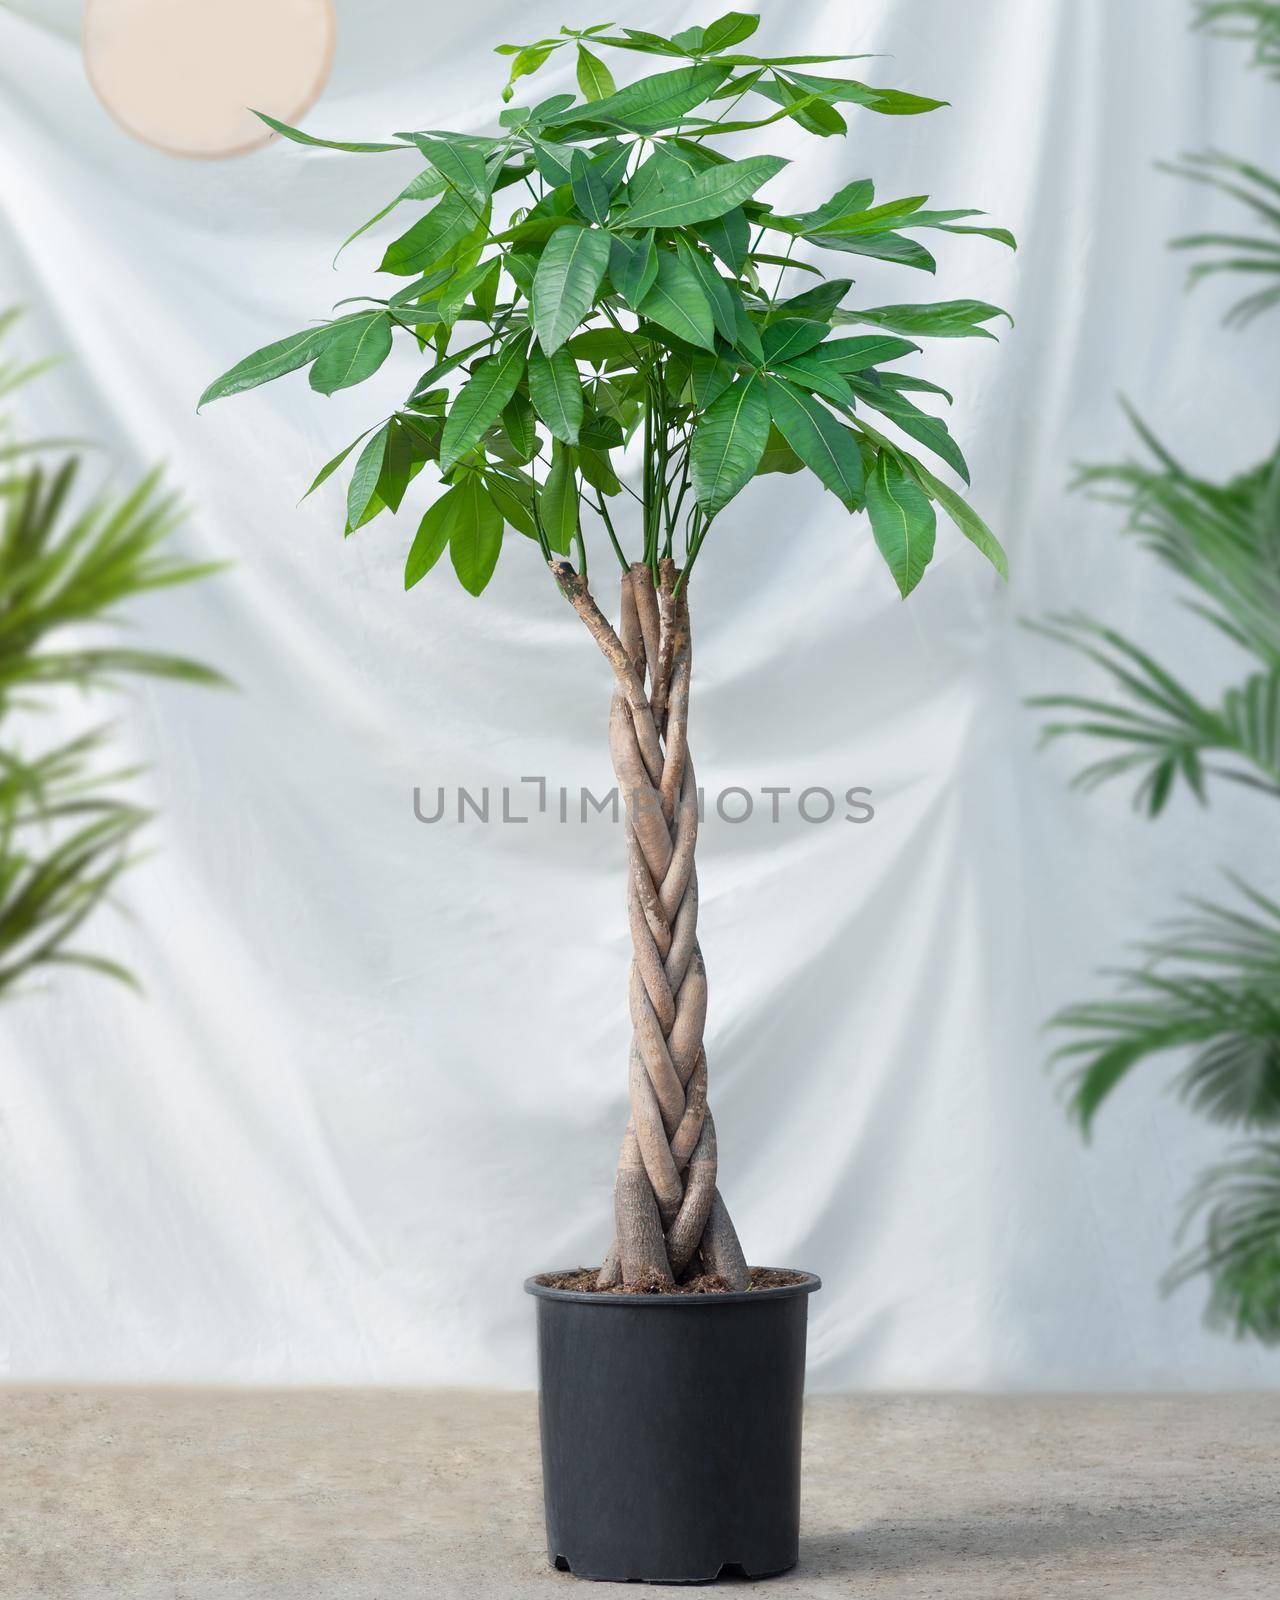 Guiana Chestnut Malvaceae, money tree plant in black pot by ferhad